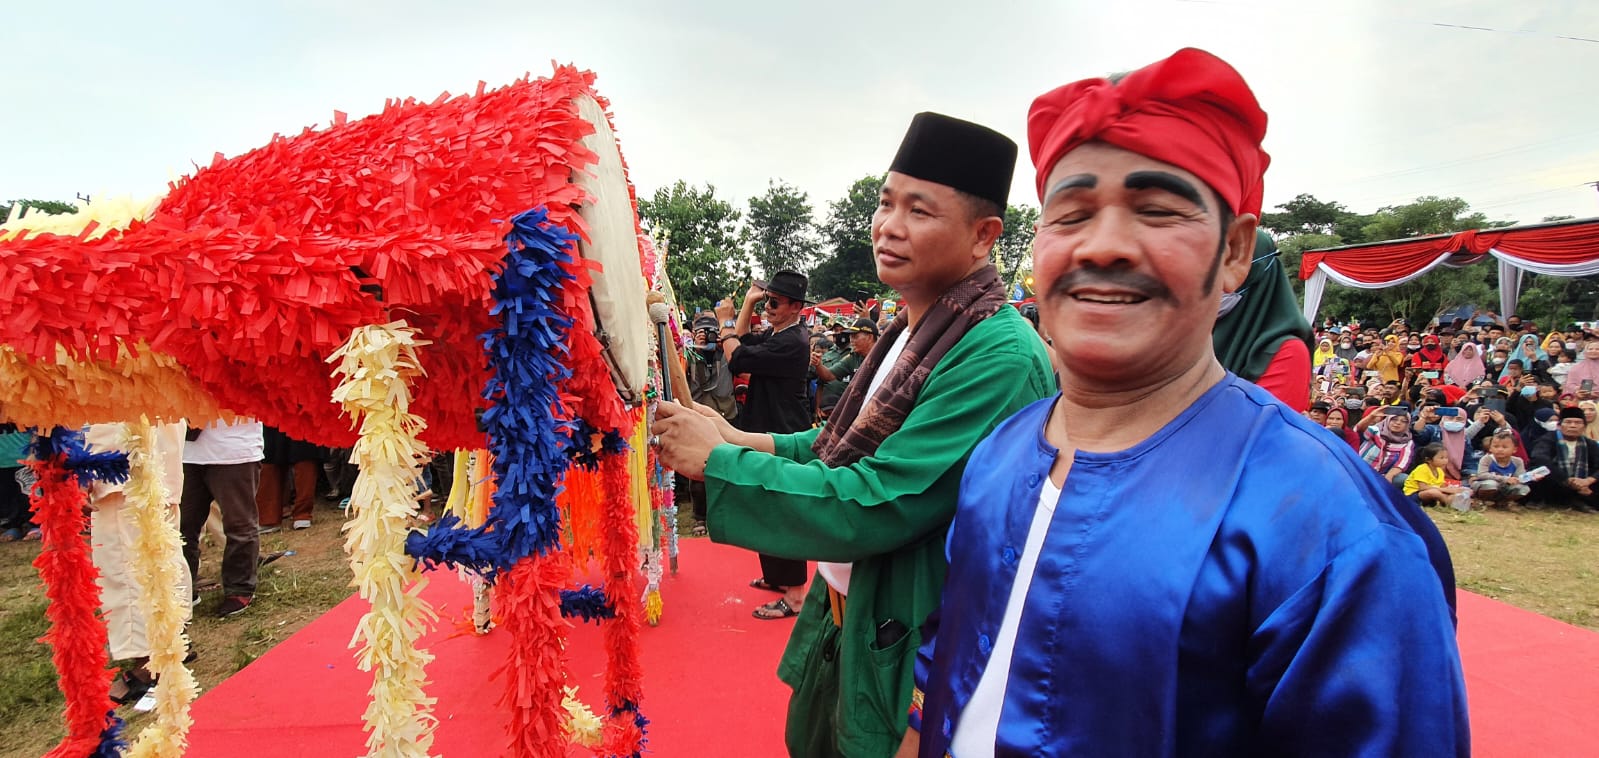 Filosofi Festival Tradisi Adu Bedug dan Dondang Kecamatan Mustikajaya Bekasi